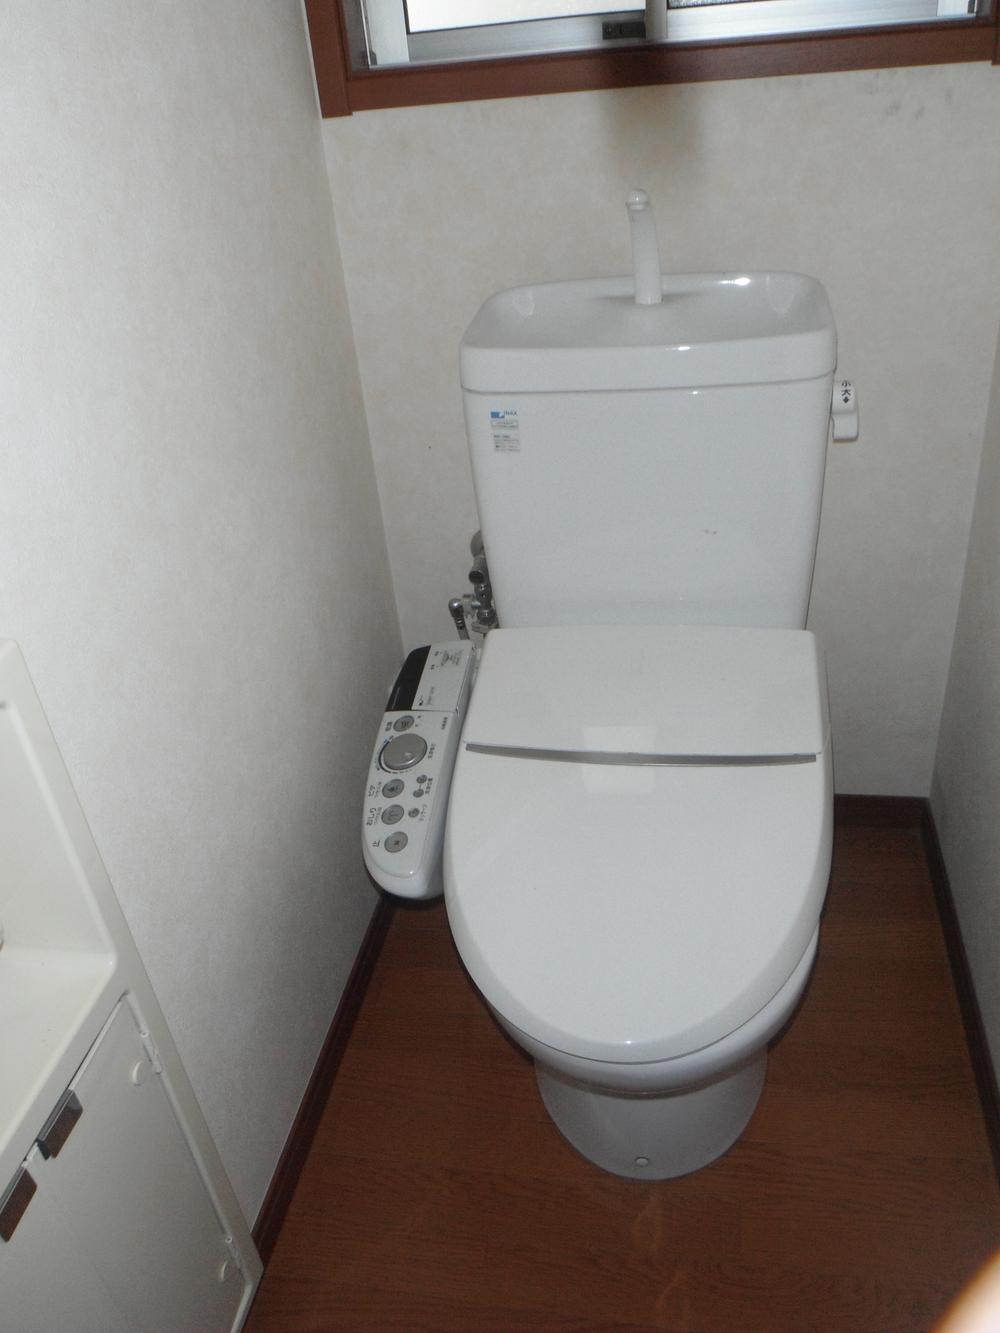 Toilet. Second floor bidet function with toilet